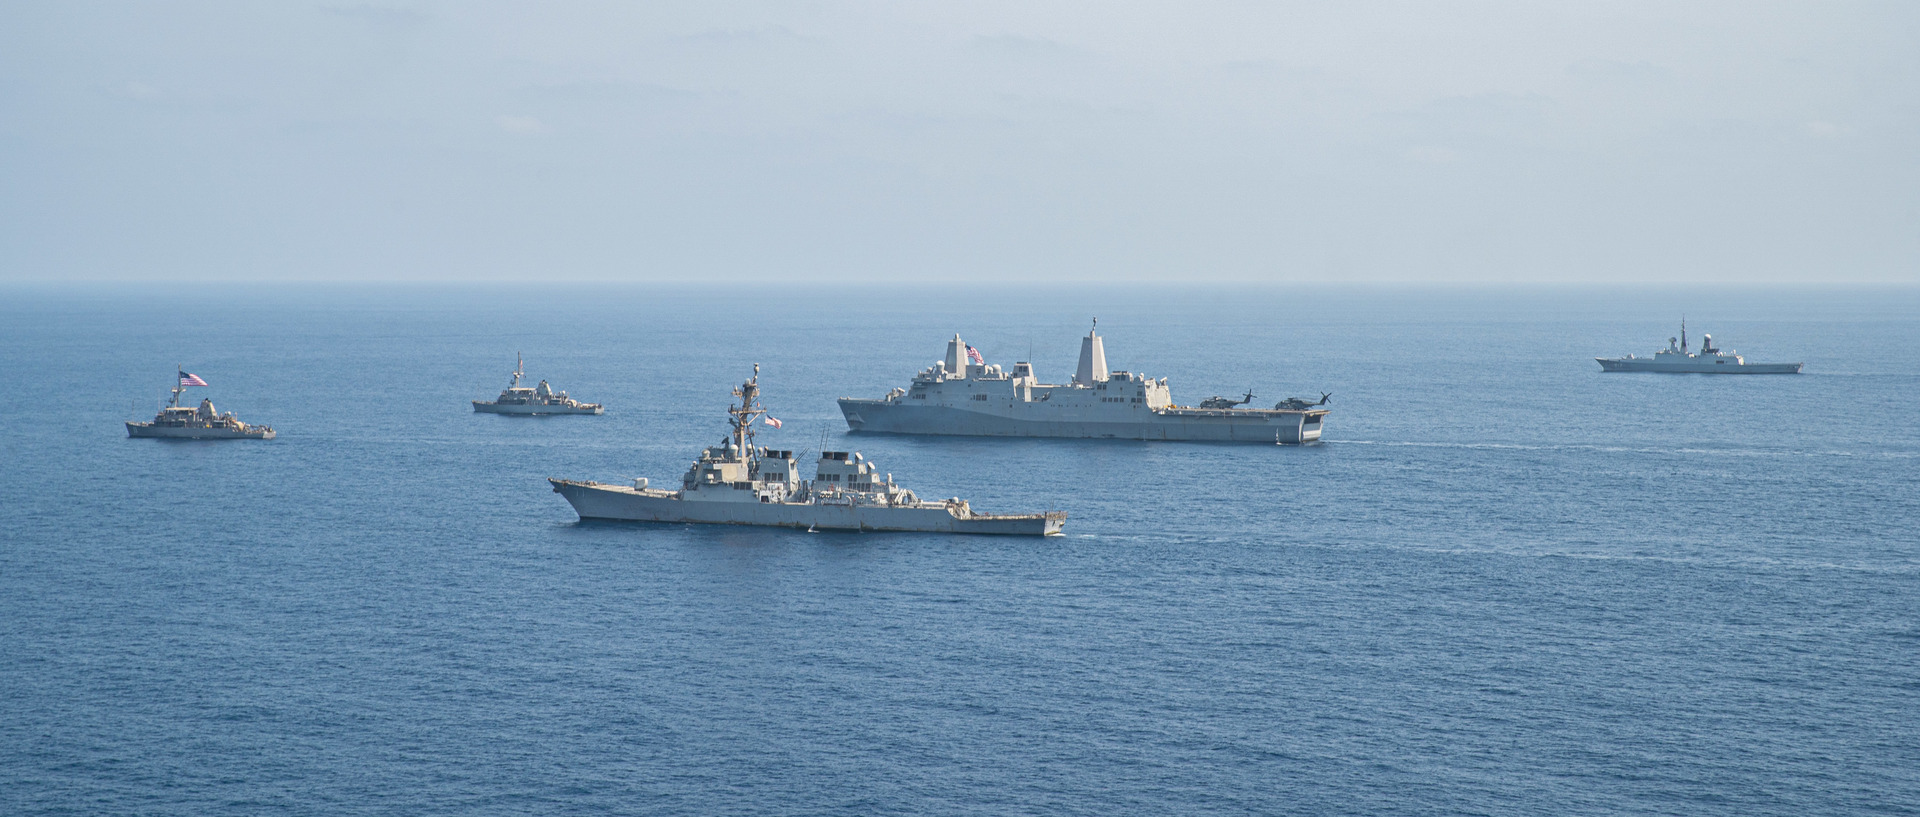 هيئة عمليات التجارة البحرية البريطانية: تعرض سفينة تجارية لهجوم في البحر الأحمر قبالة سواحل اليمن